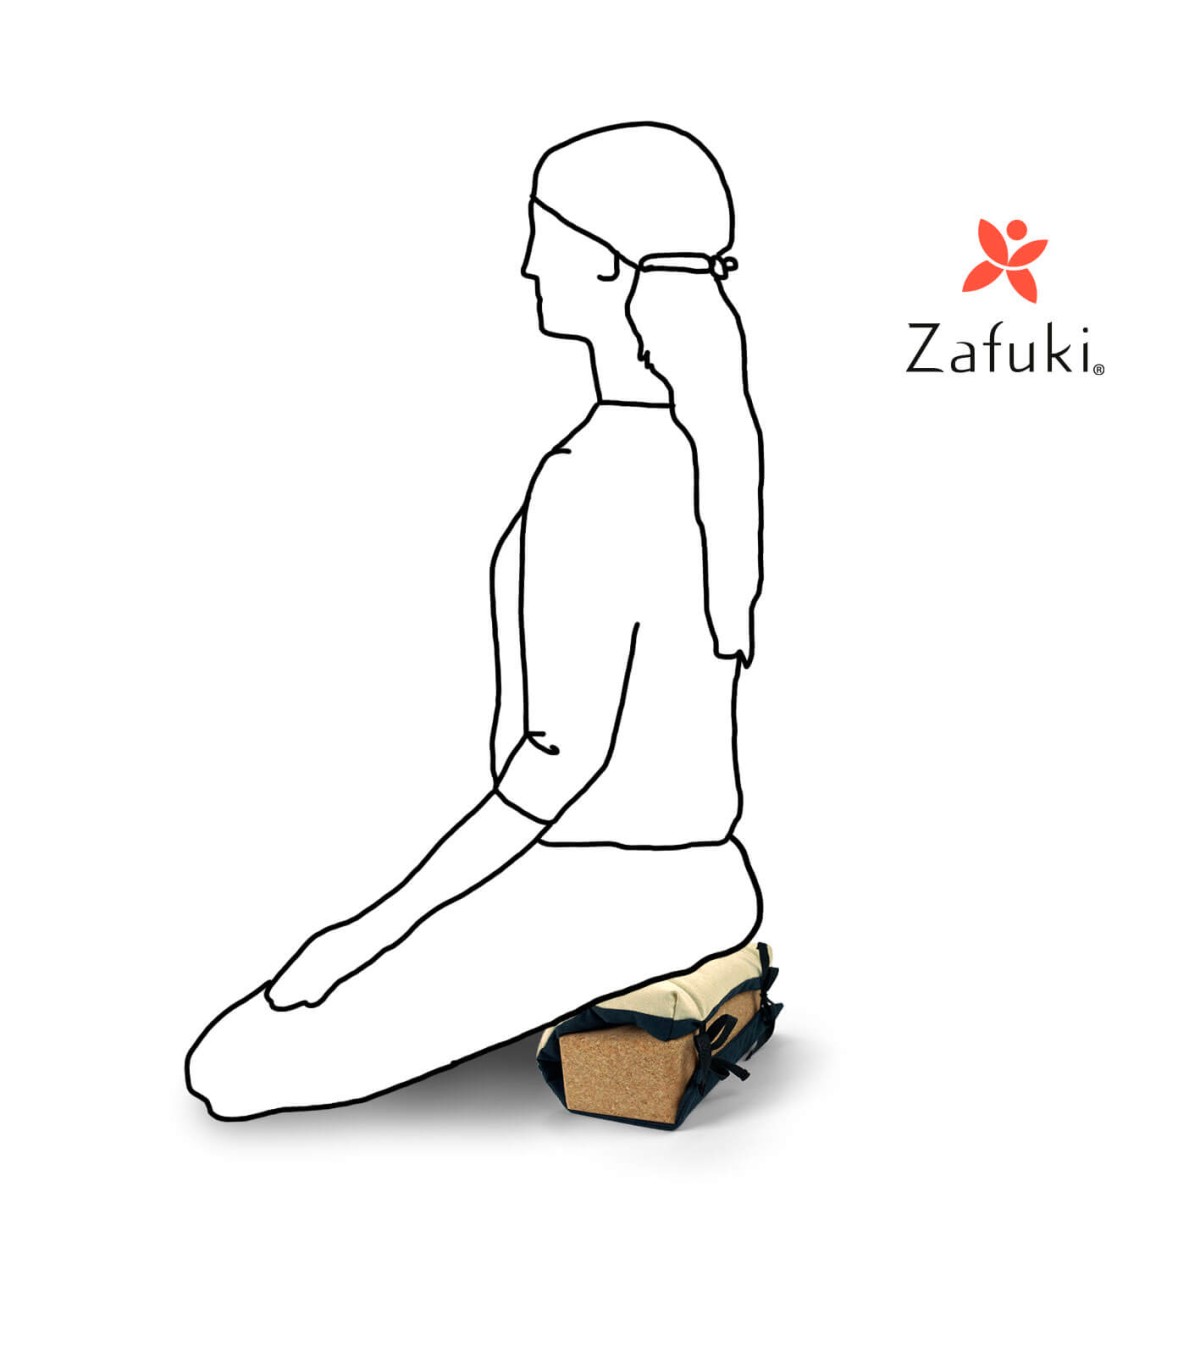 ZAFUKI - Tienda de Zafus para meditación y yoga